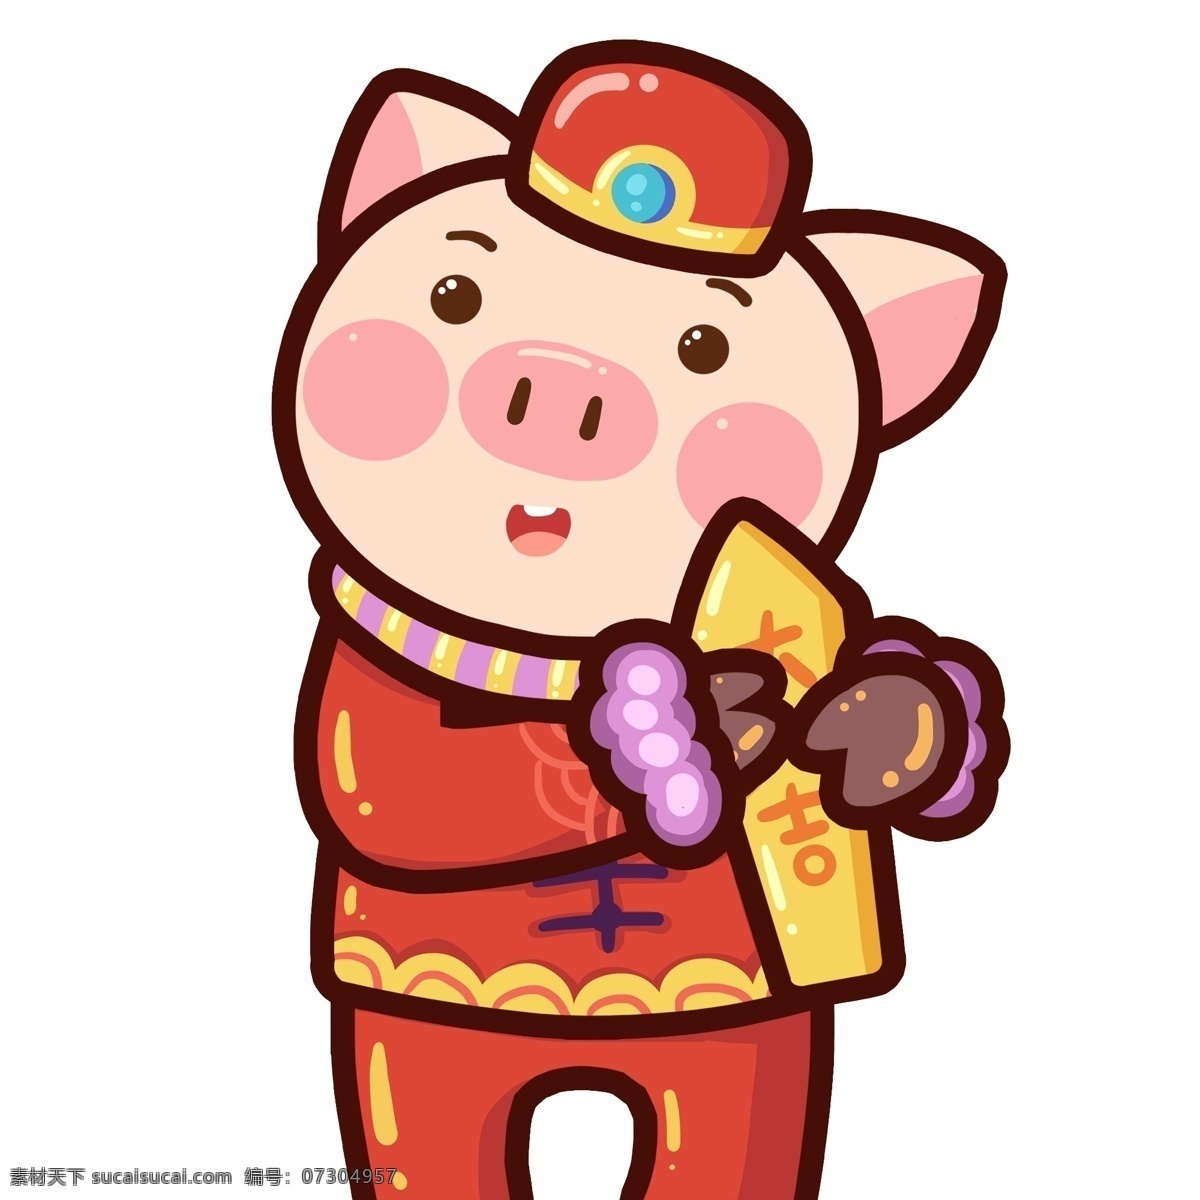 新年 潮 漫 猪 大吉 签 漫画 插画 中国风 春节 新春 手绘 潮漫 小猪 猪猪 大吉签 猪年 2019年 小猪形象 猪年形象